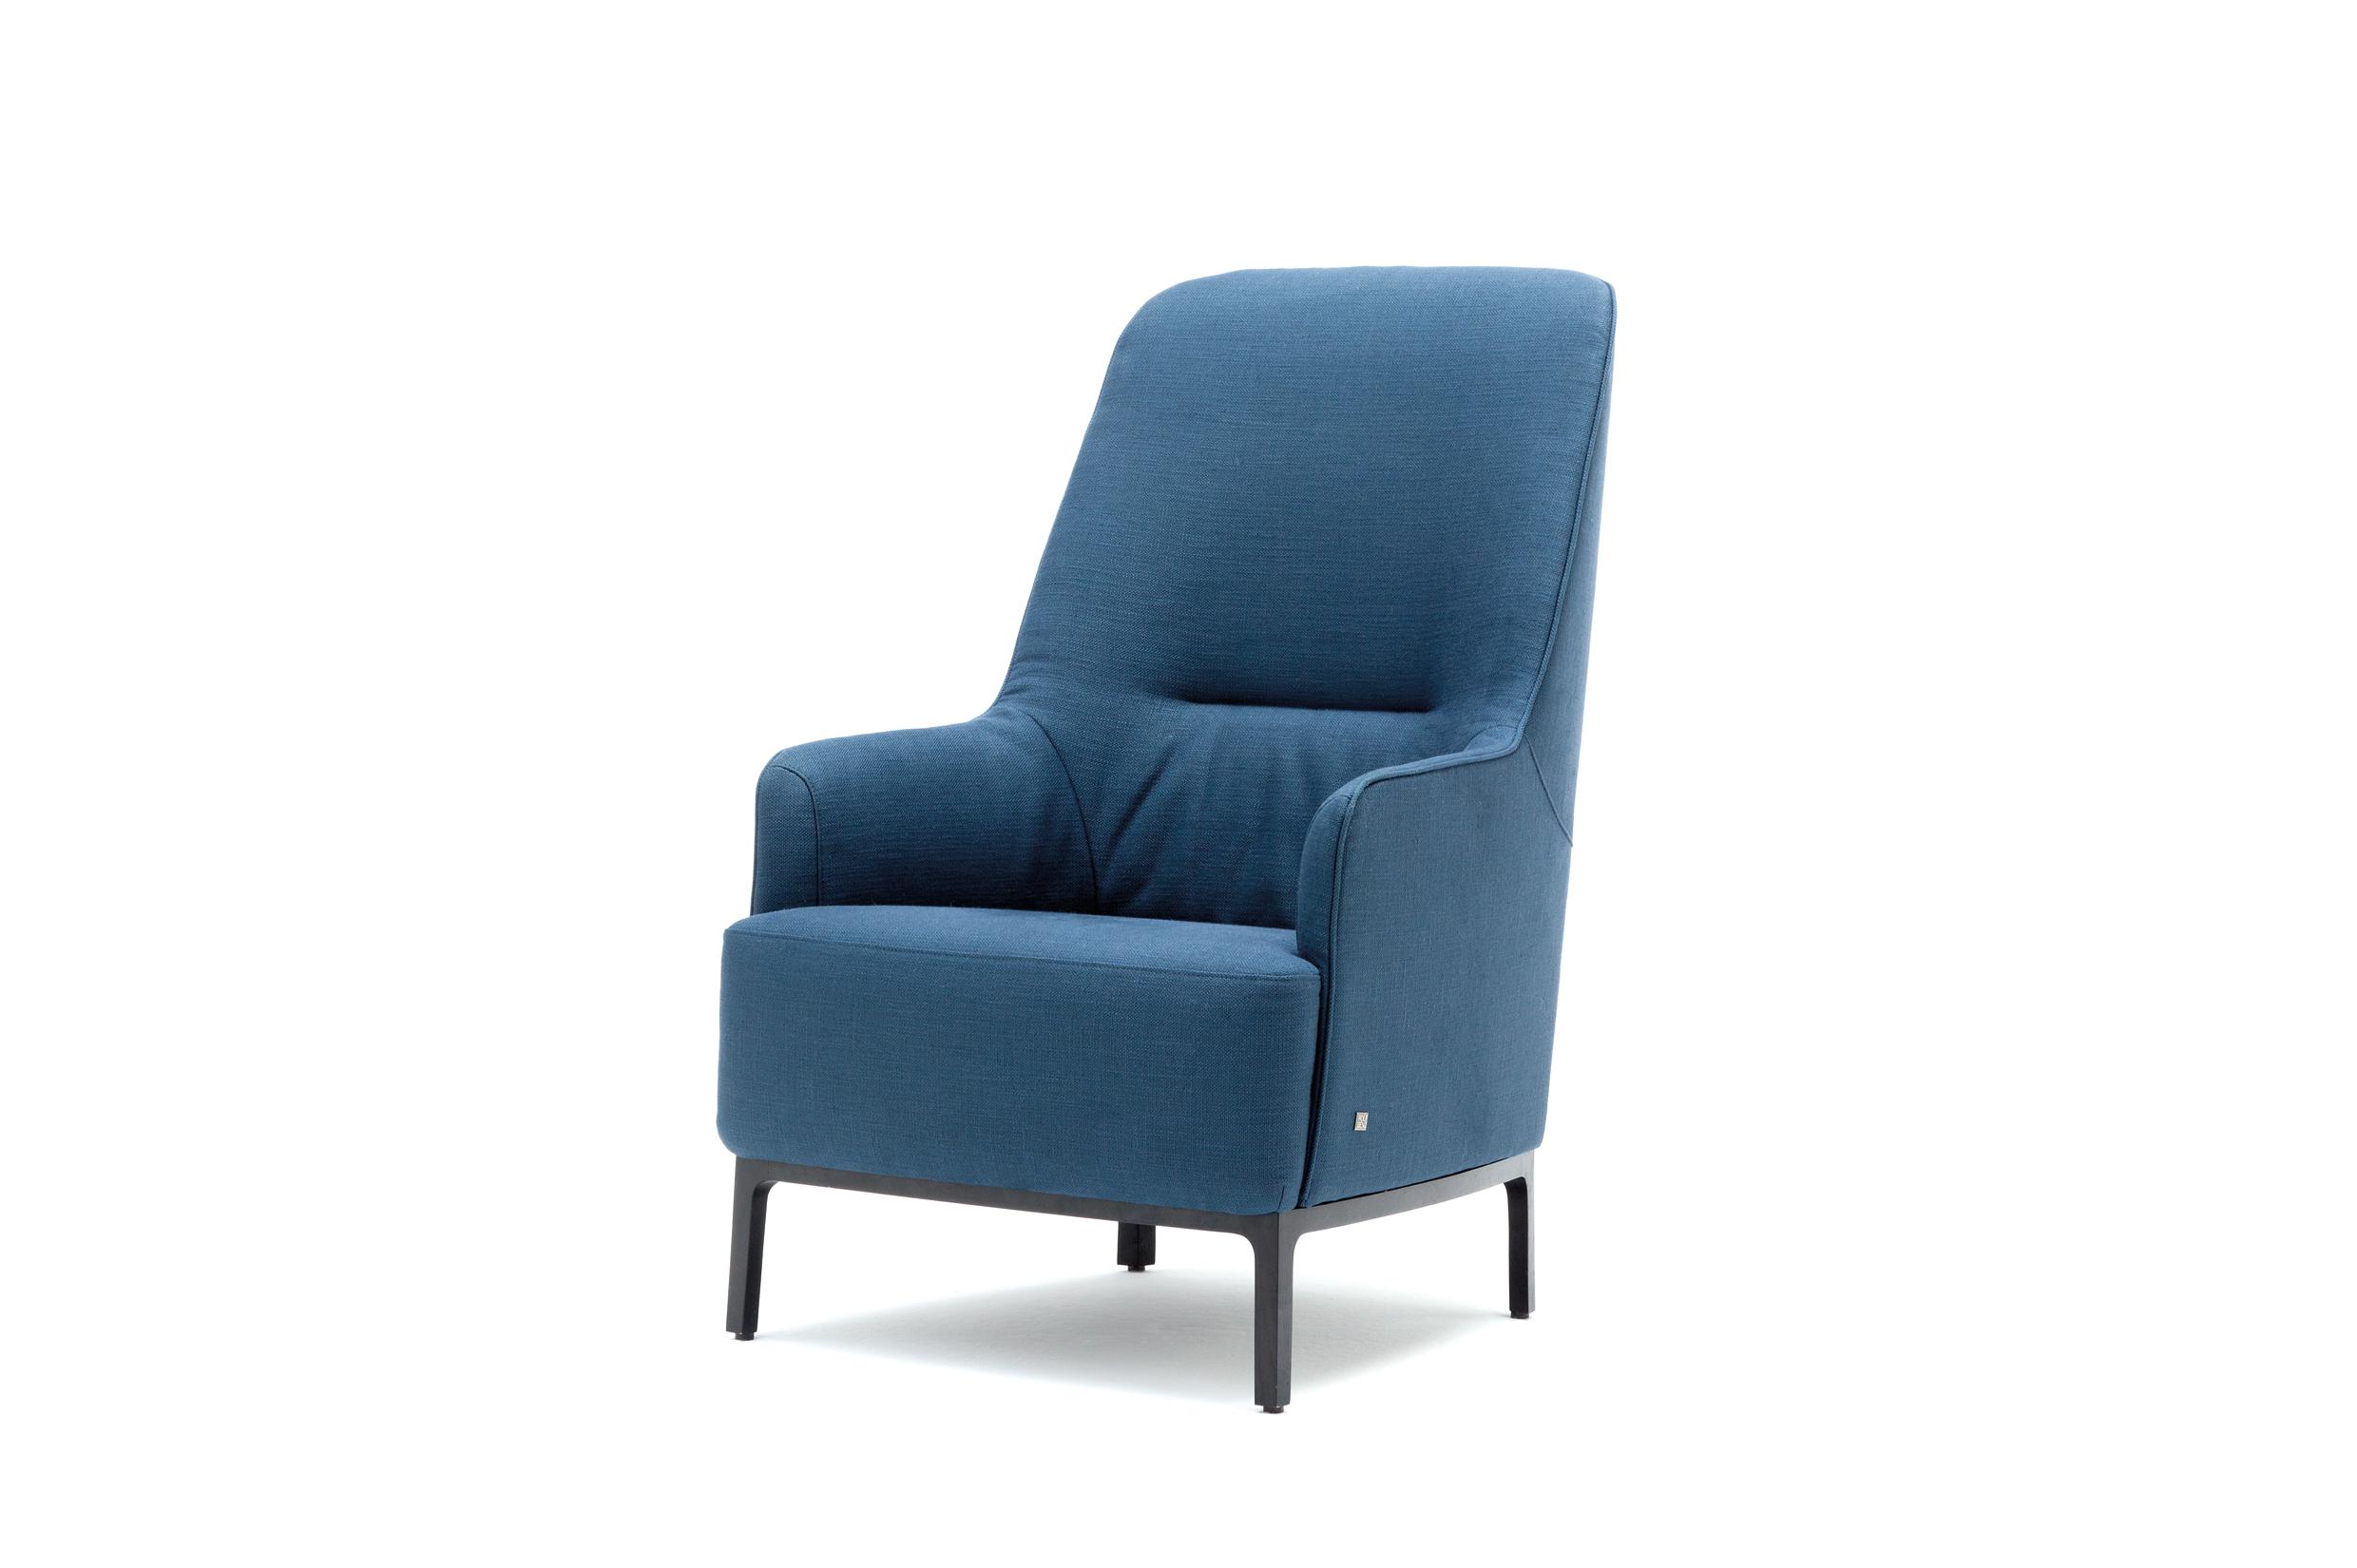 Rolf Benz 366 fauteuil blauw